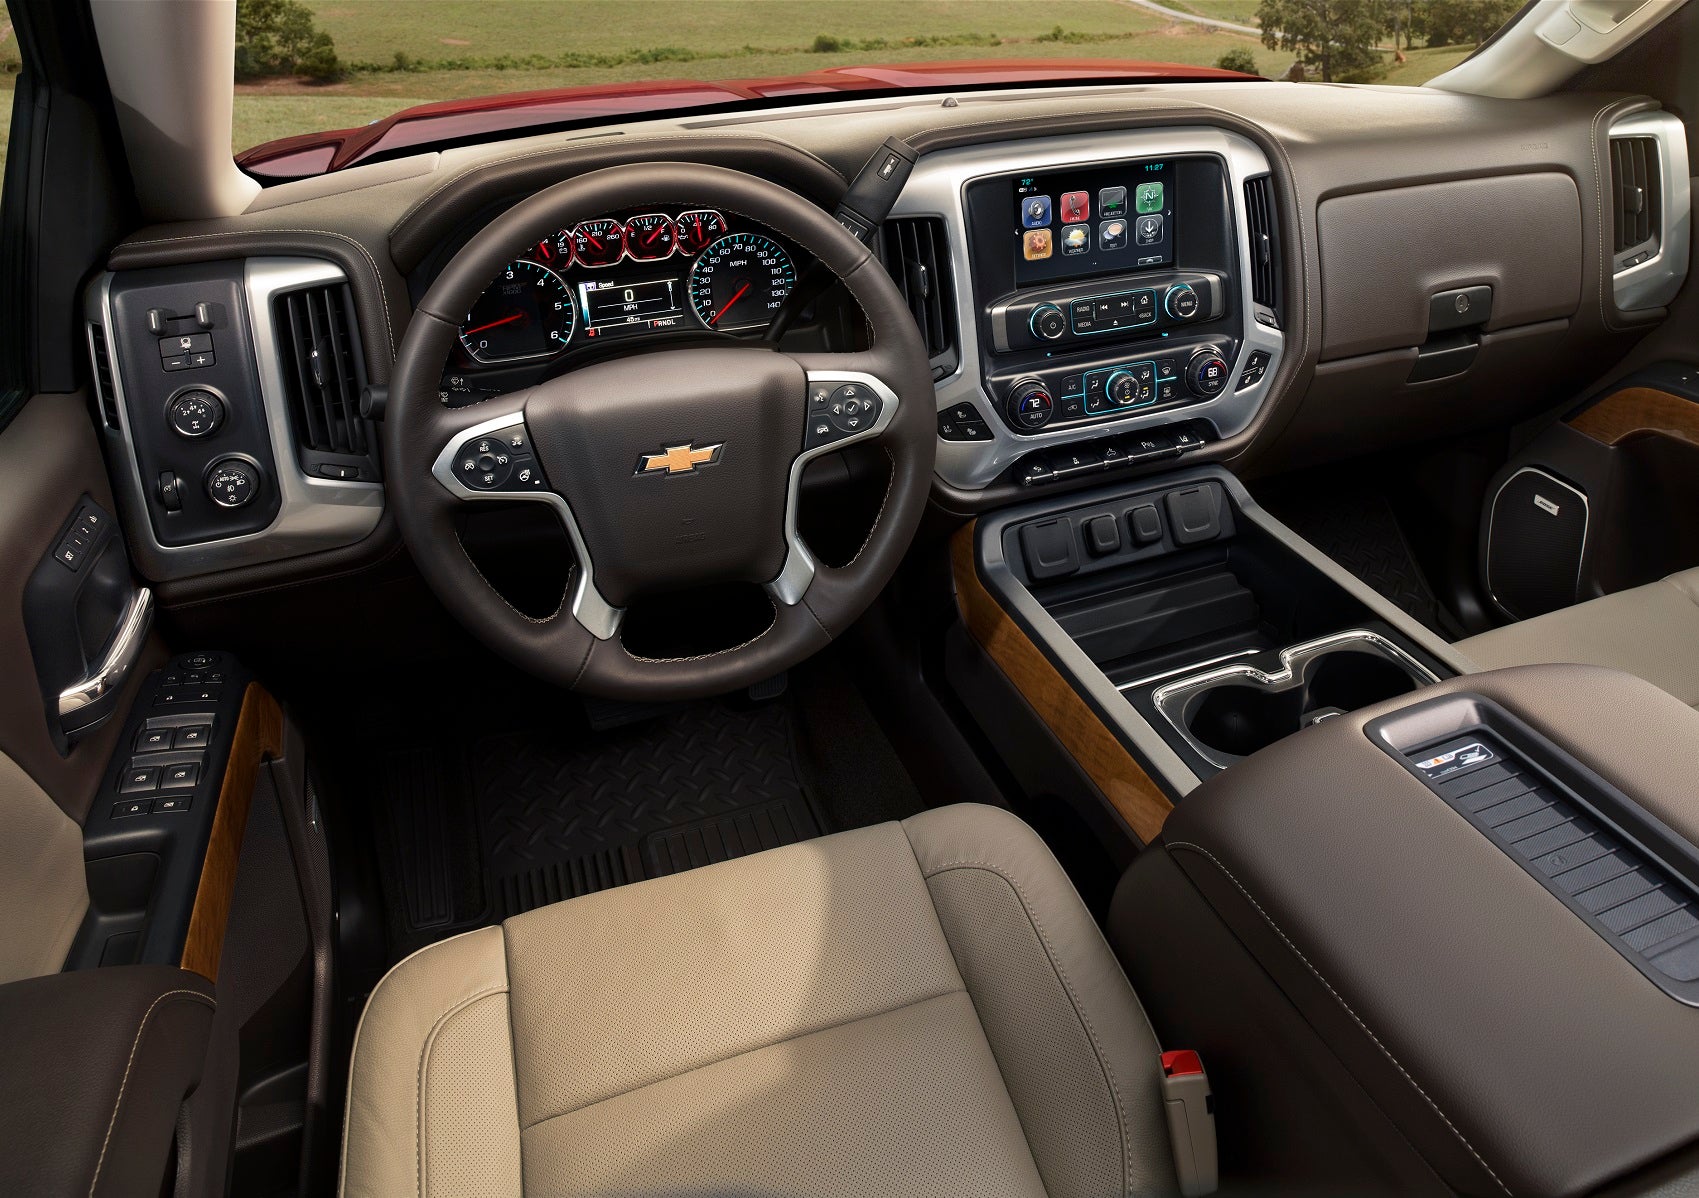 Chevy Silverado 2500 Interior Technology Features